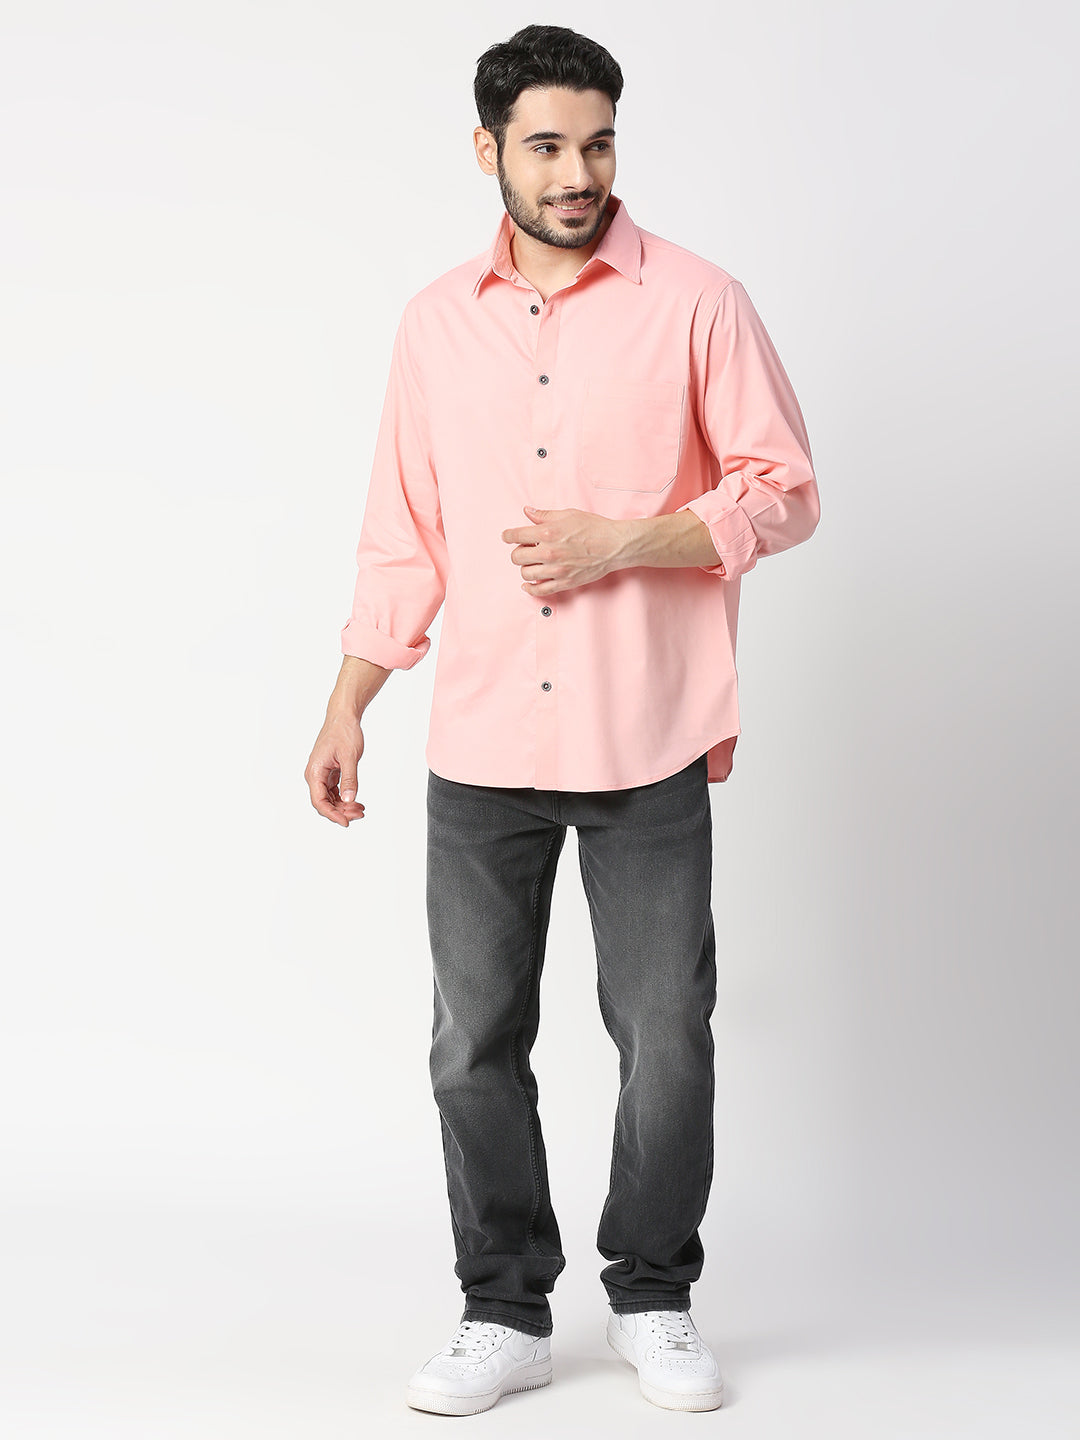 Buy Blamblack Peach Color Solid Regular Shirt.